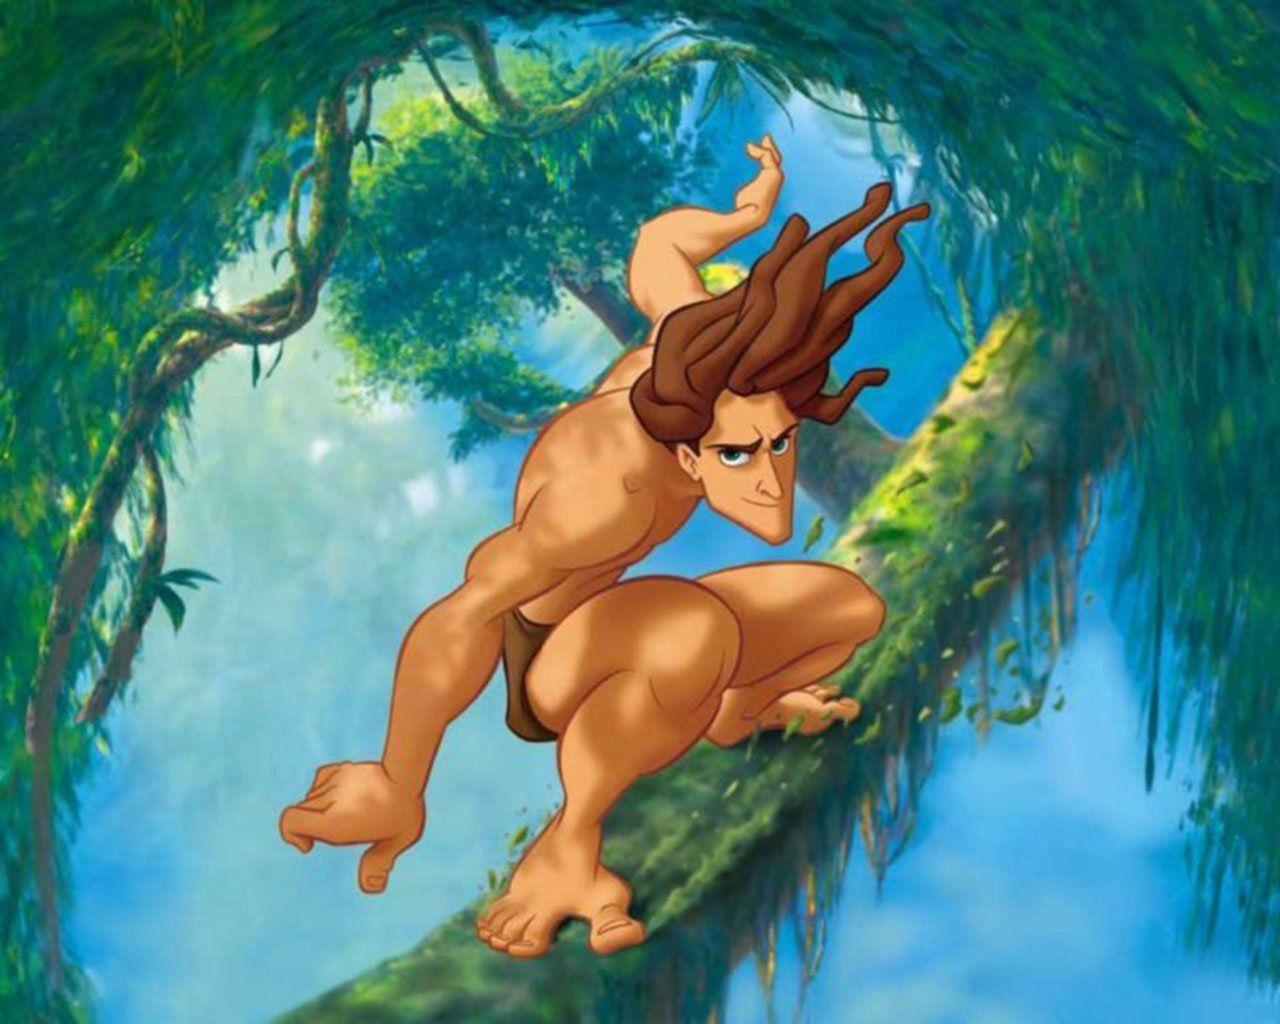 Tarzan Cartoon Hd Wallpaper